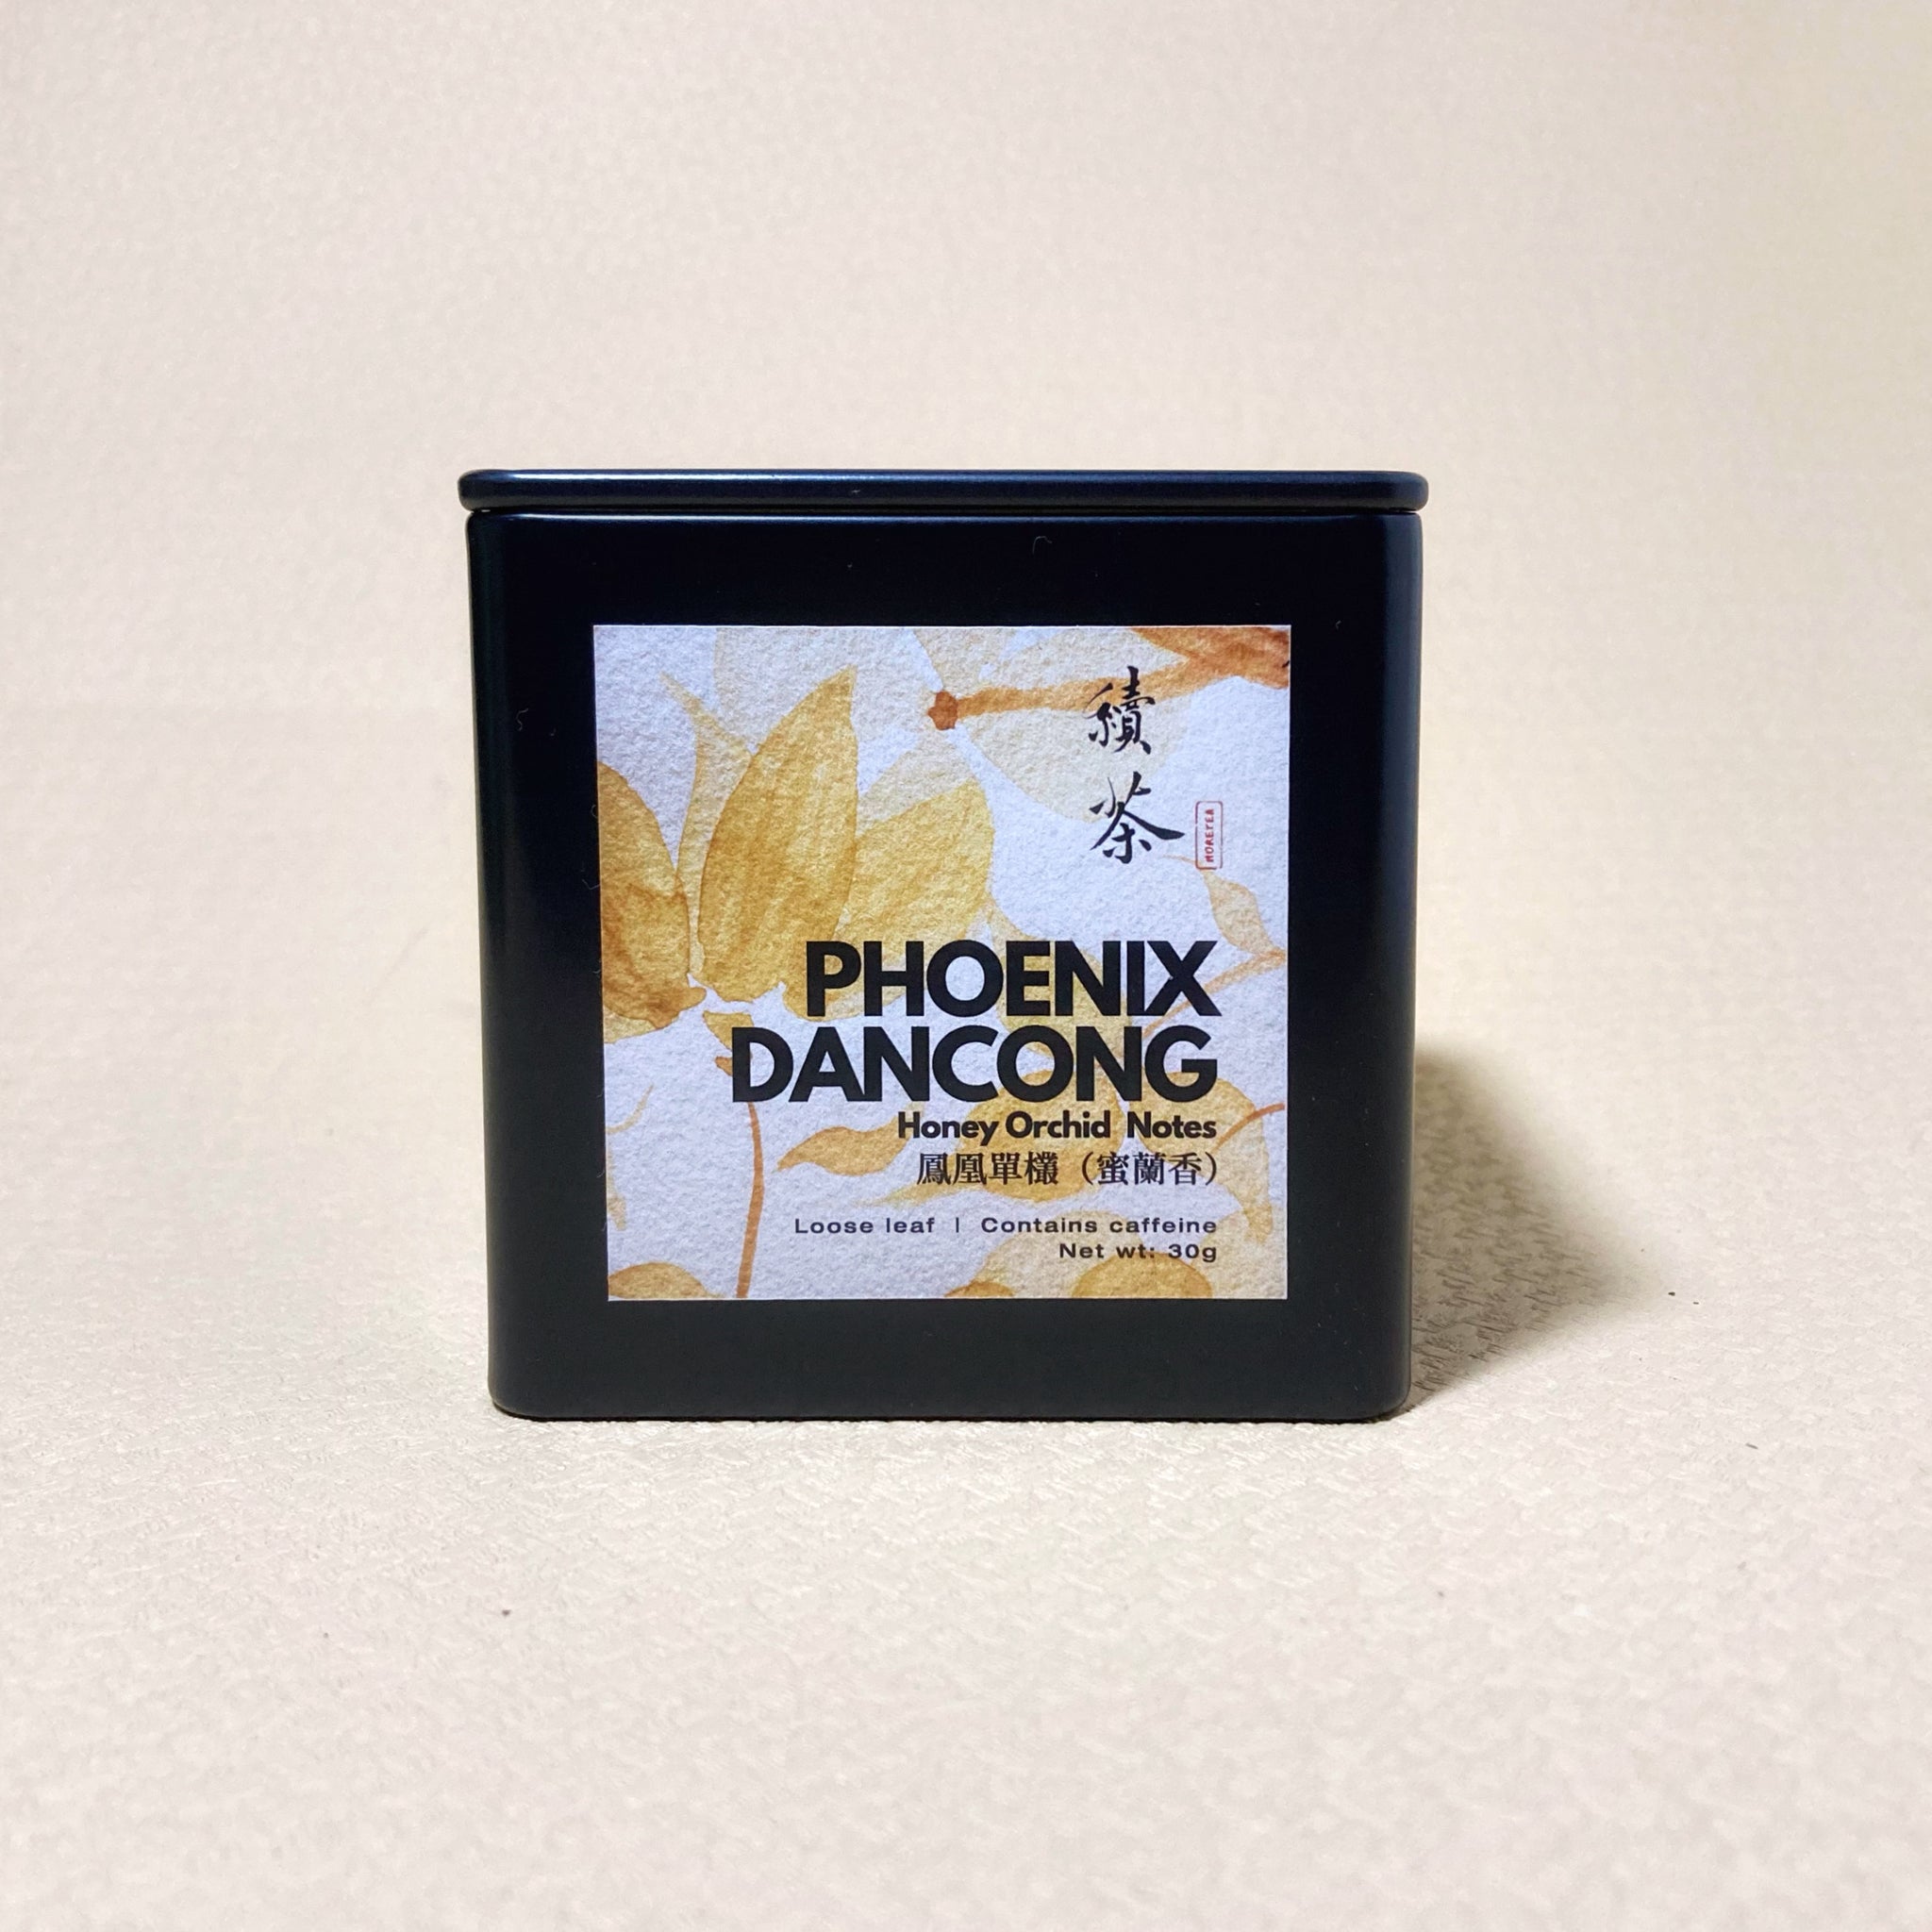 Phoenix Dancong (Honey Orchid Notes) by More Tea HK